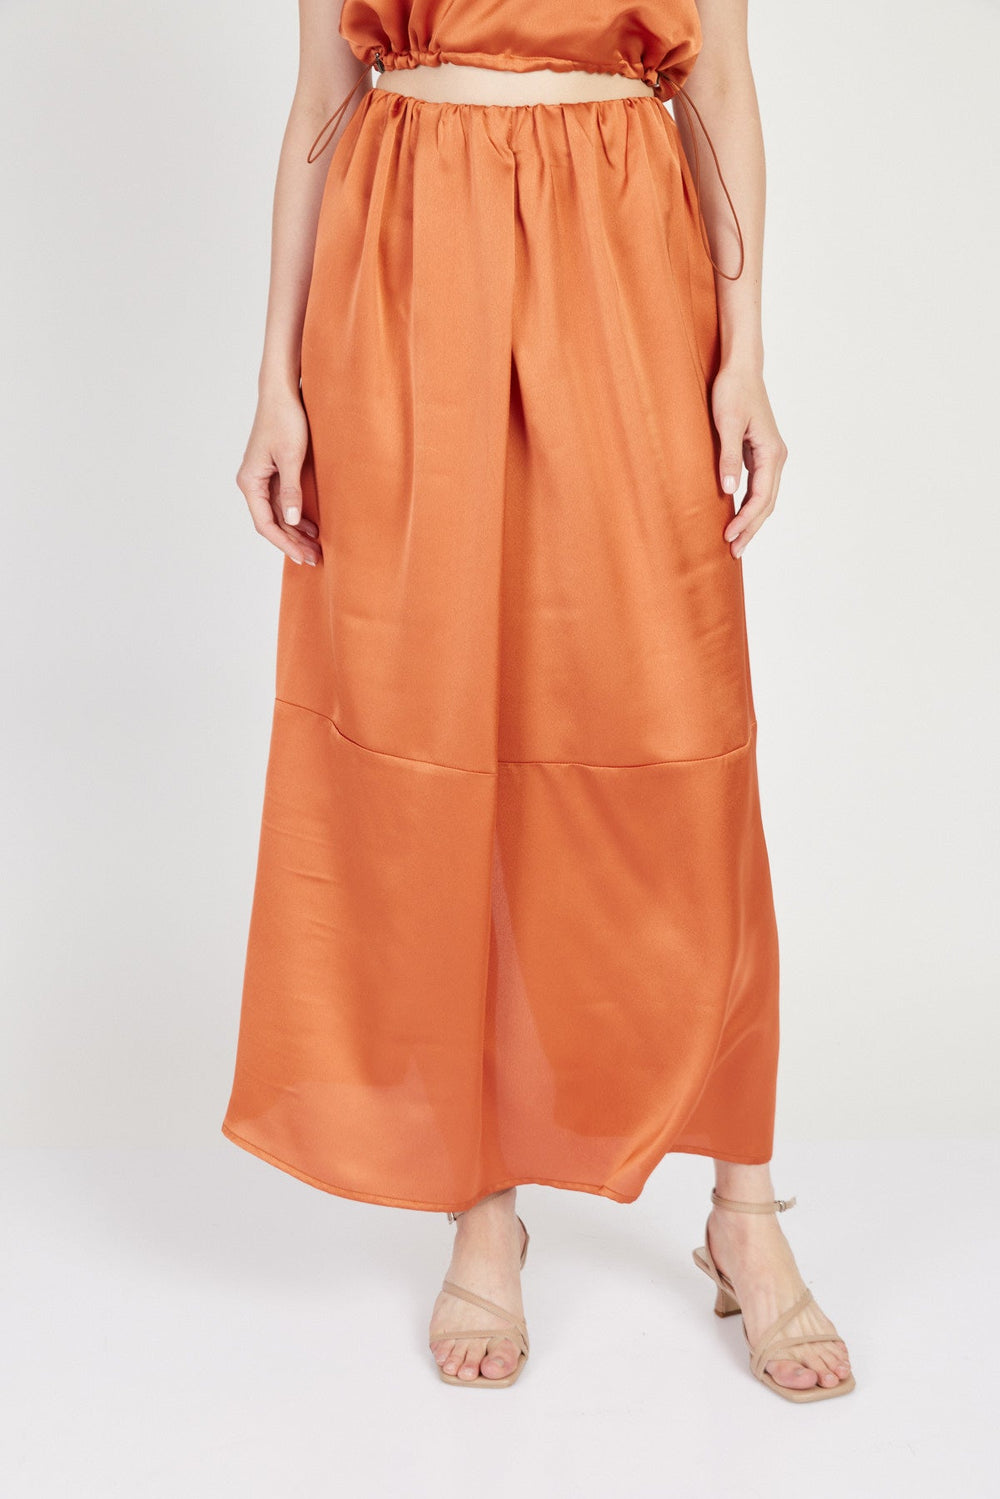 חצאית מקסי סנדרו בצבע חמרה - Julliet